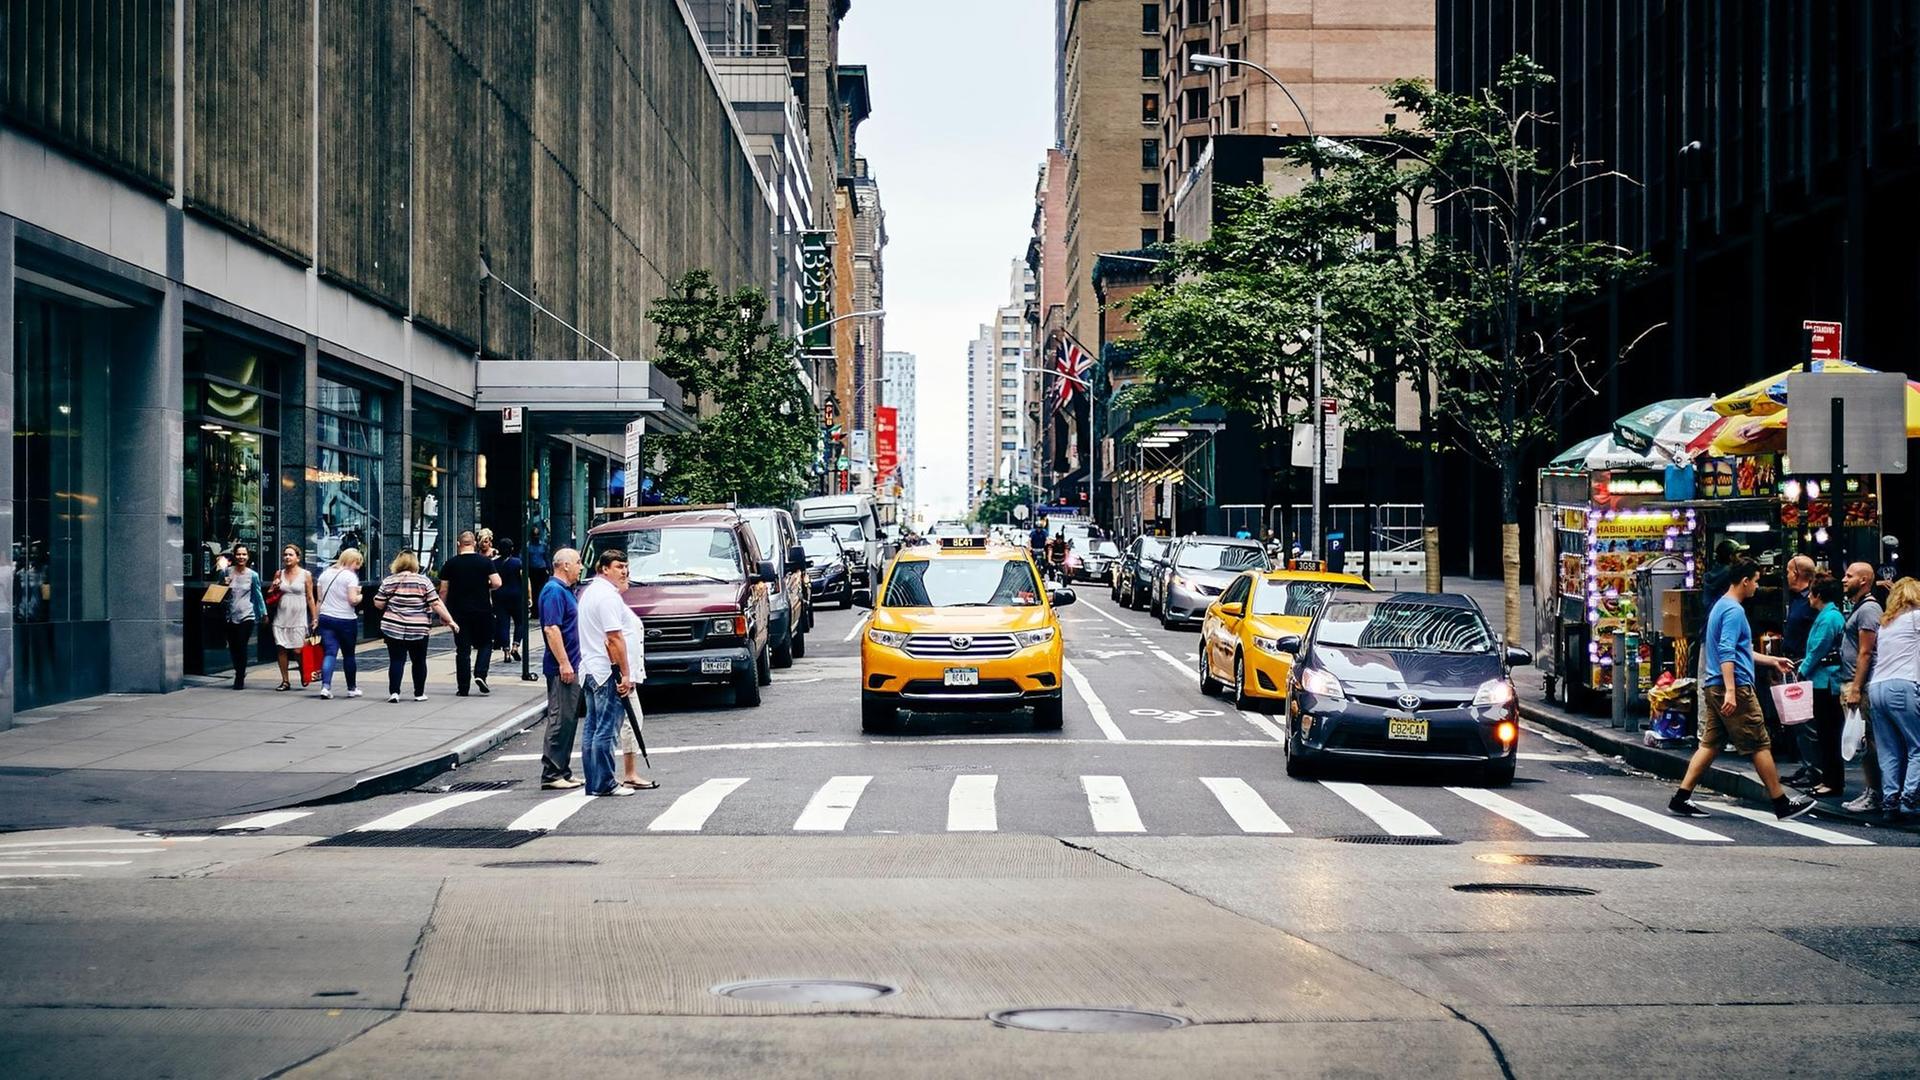 Blick auf einen Fußübergang in New York. Am Rand stehen Menschen. Auf der Straße eines der gelben Taxi